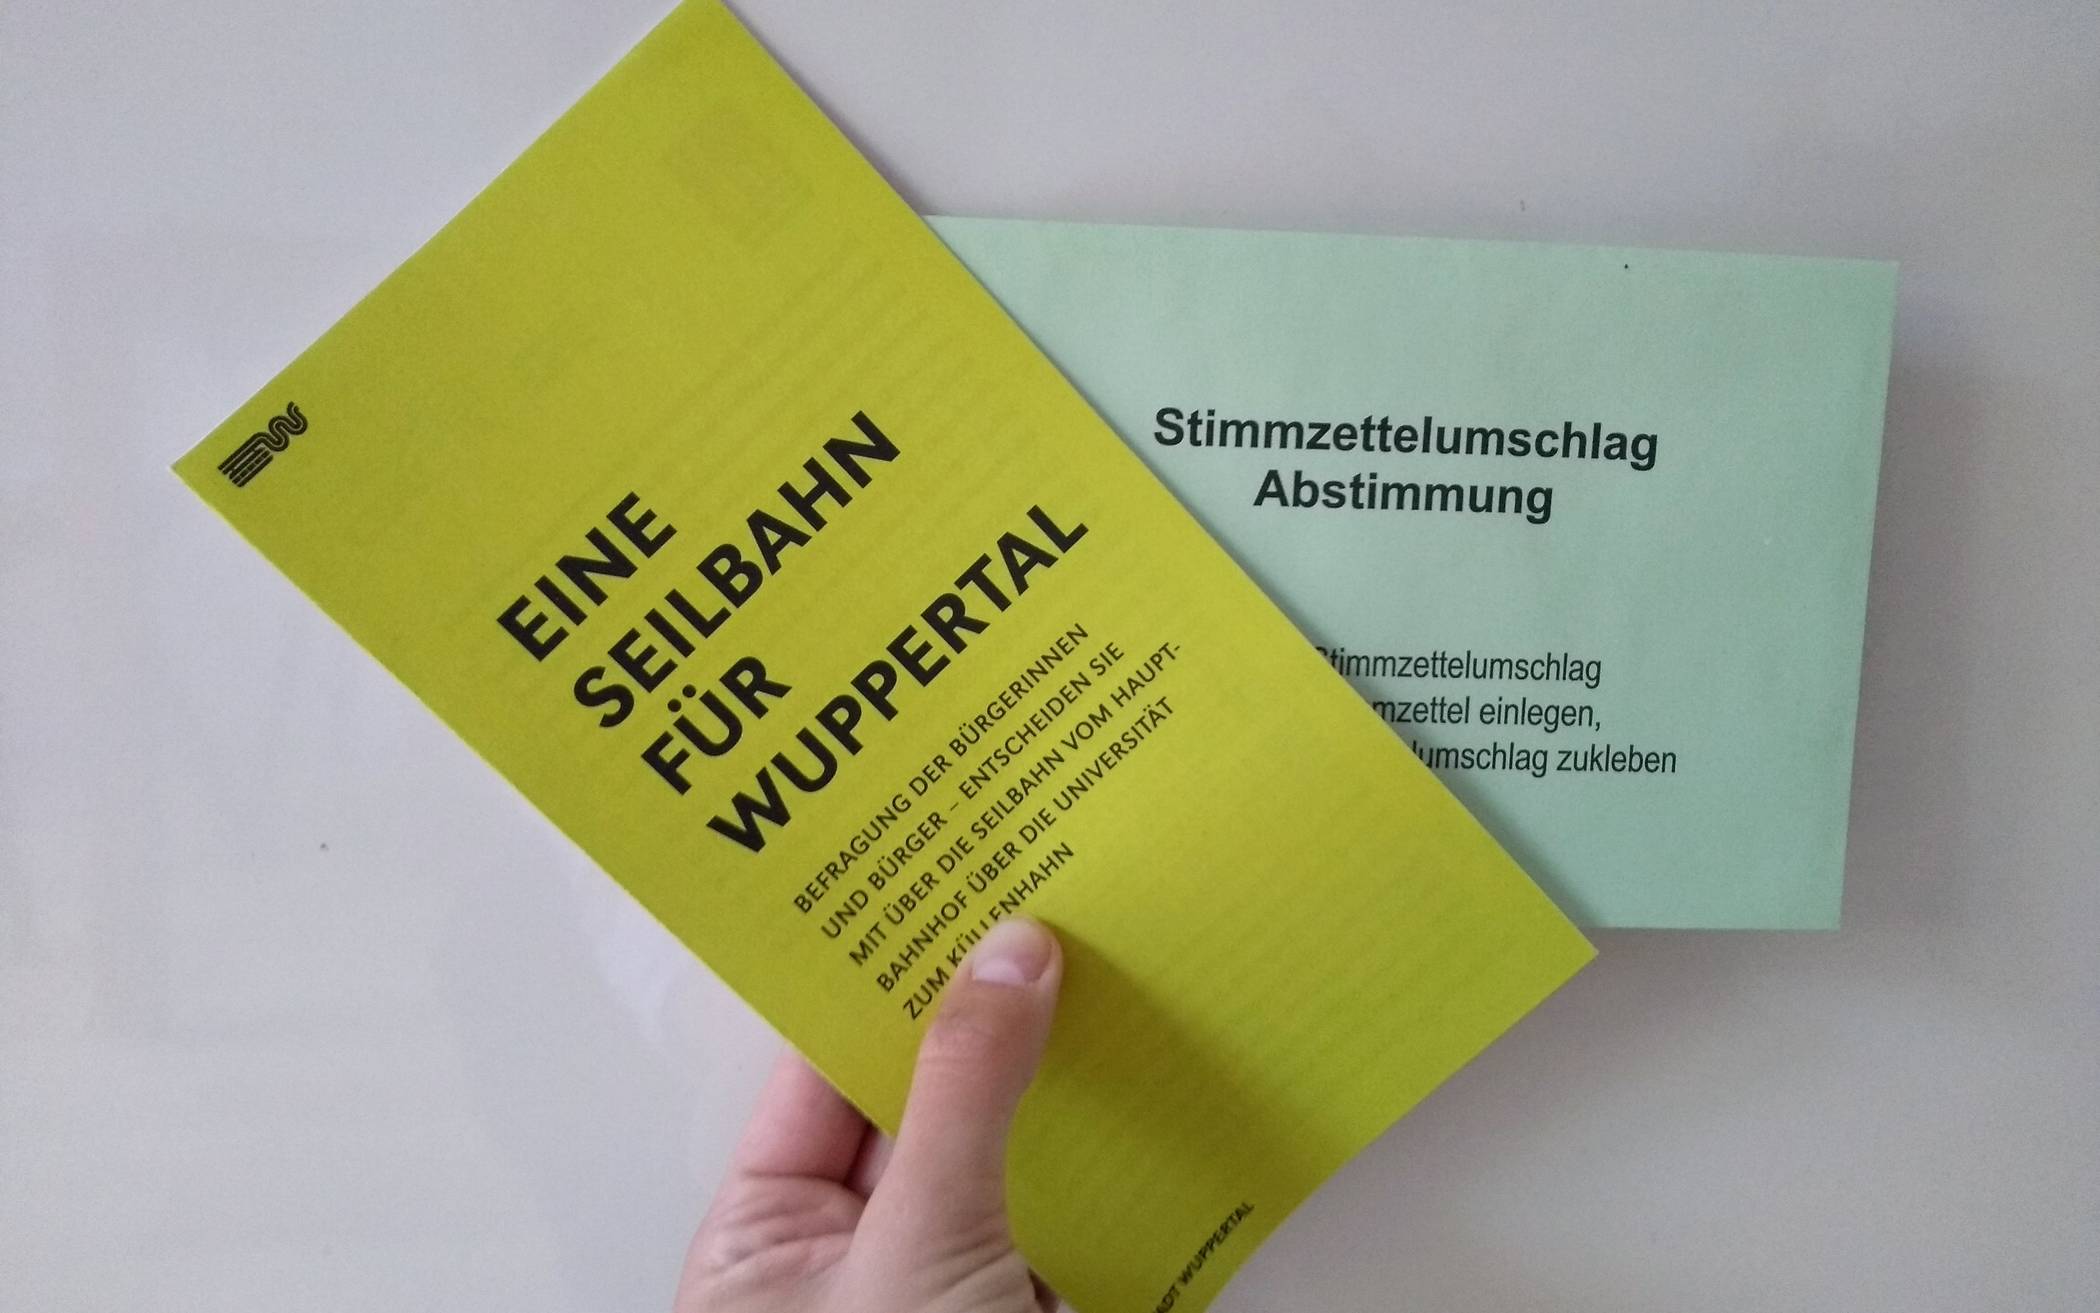  Eine gelbe Broschüre informiert zur Seilbahn, in den grünen Umschlag kommt der ausgefüllte Stimmzettel.  